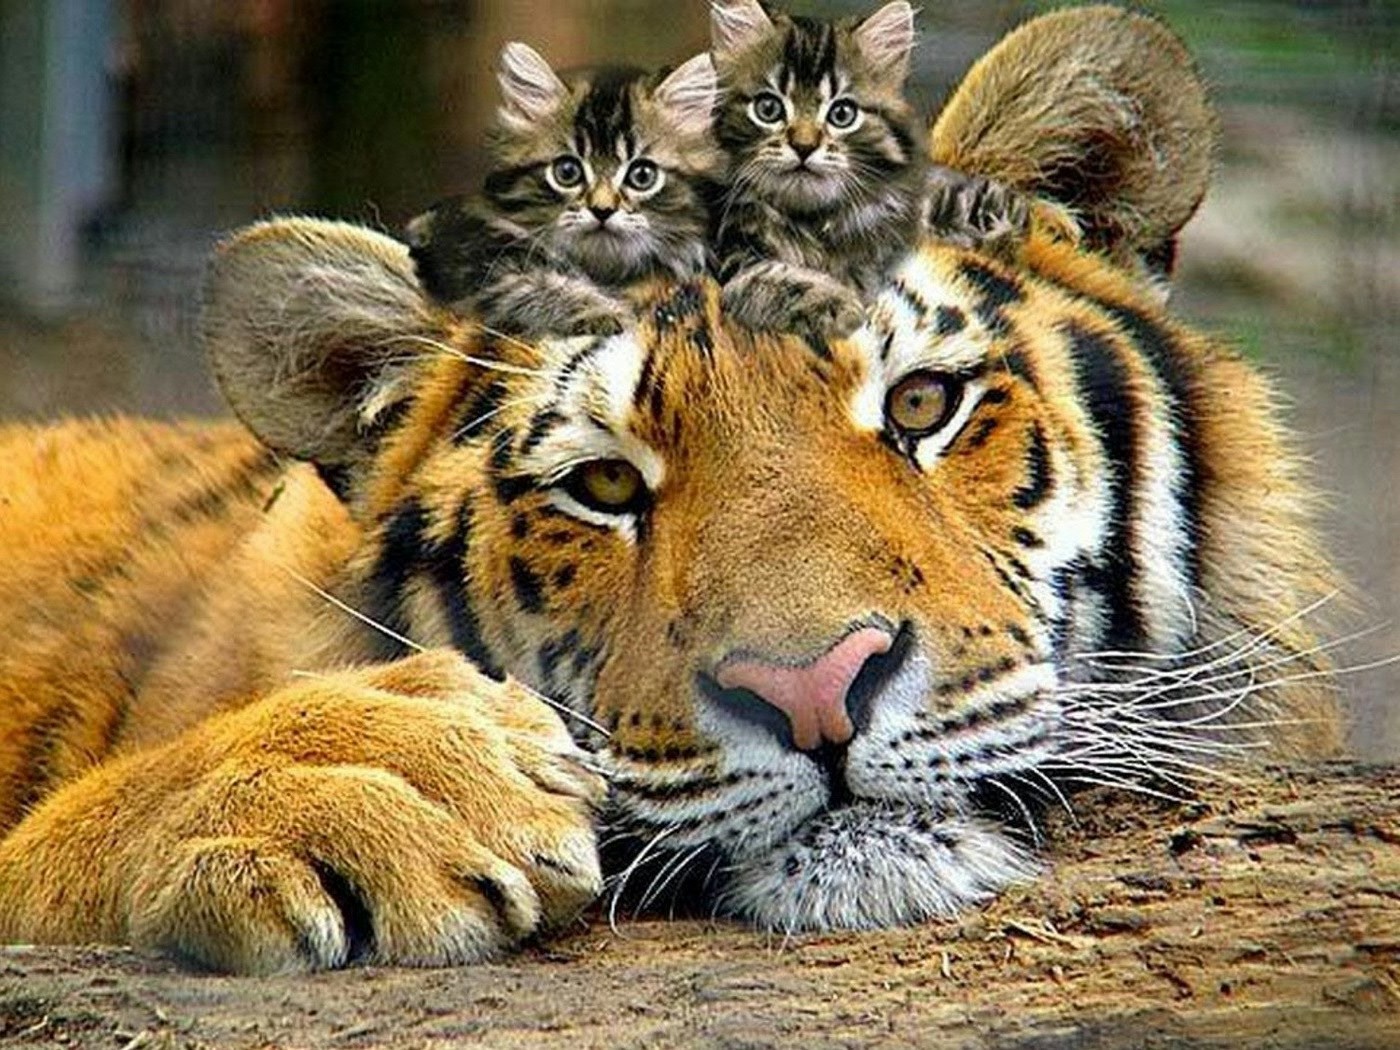 животные кошка дикой природы животное млекопитающее дикий хищник природа зоопарк мясоед охотник мех сафари джунгли тигр большой